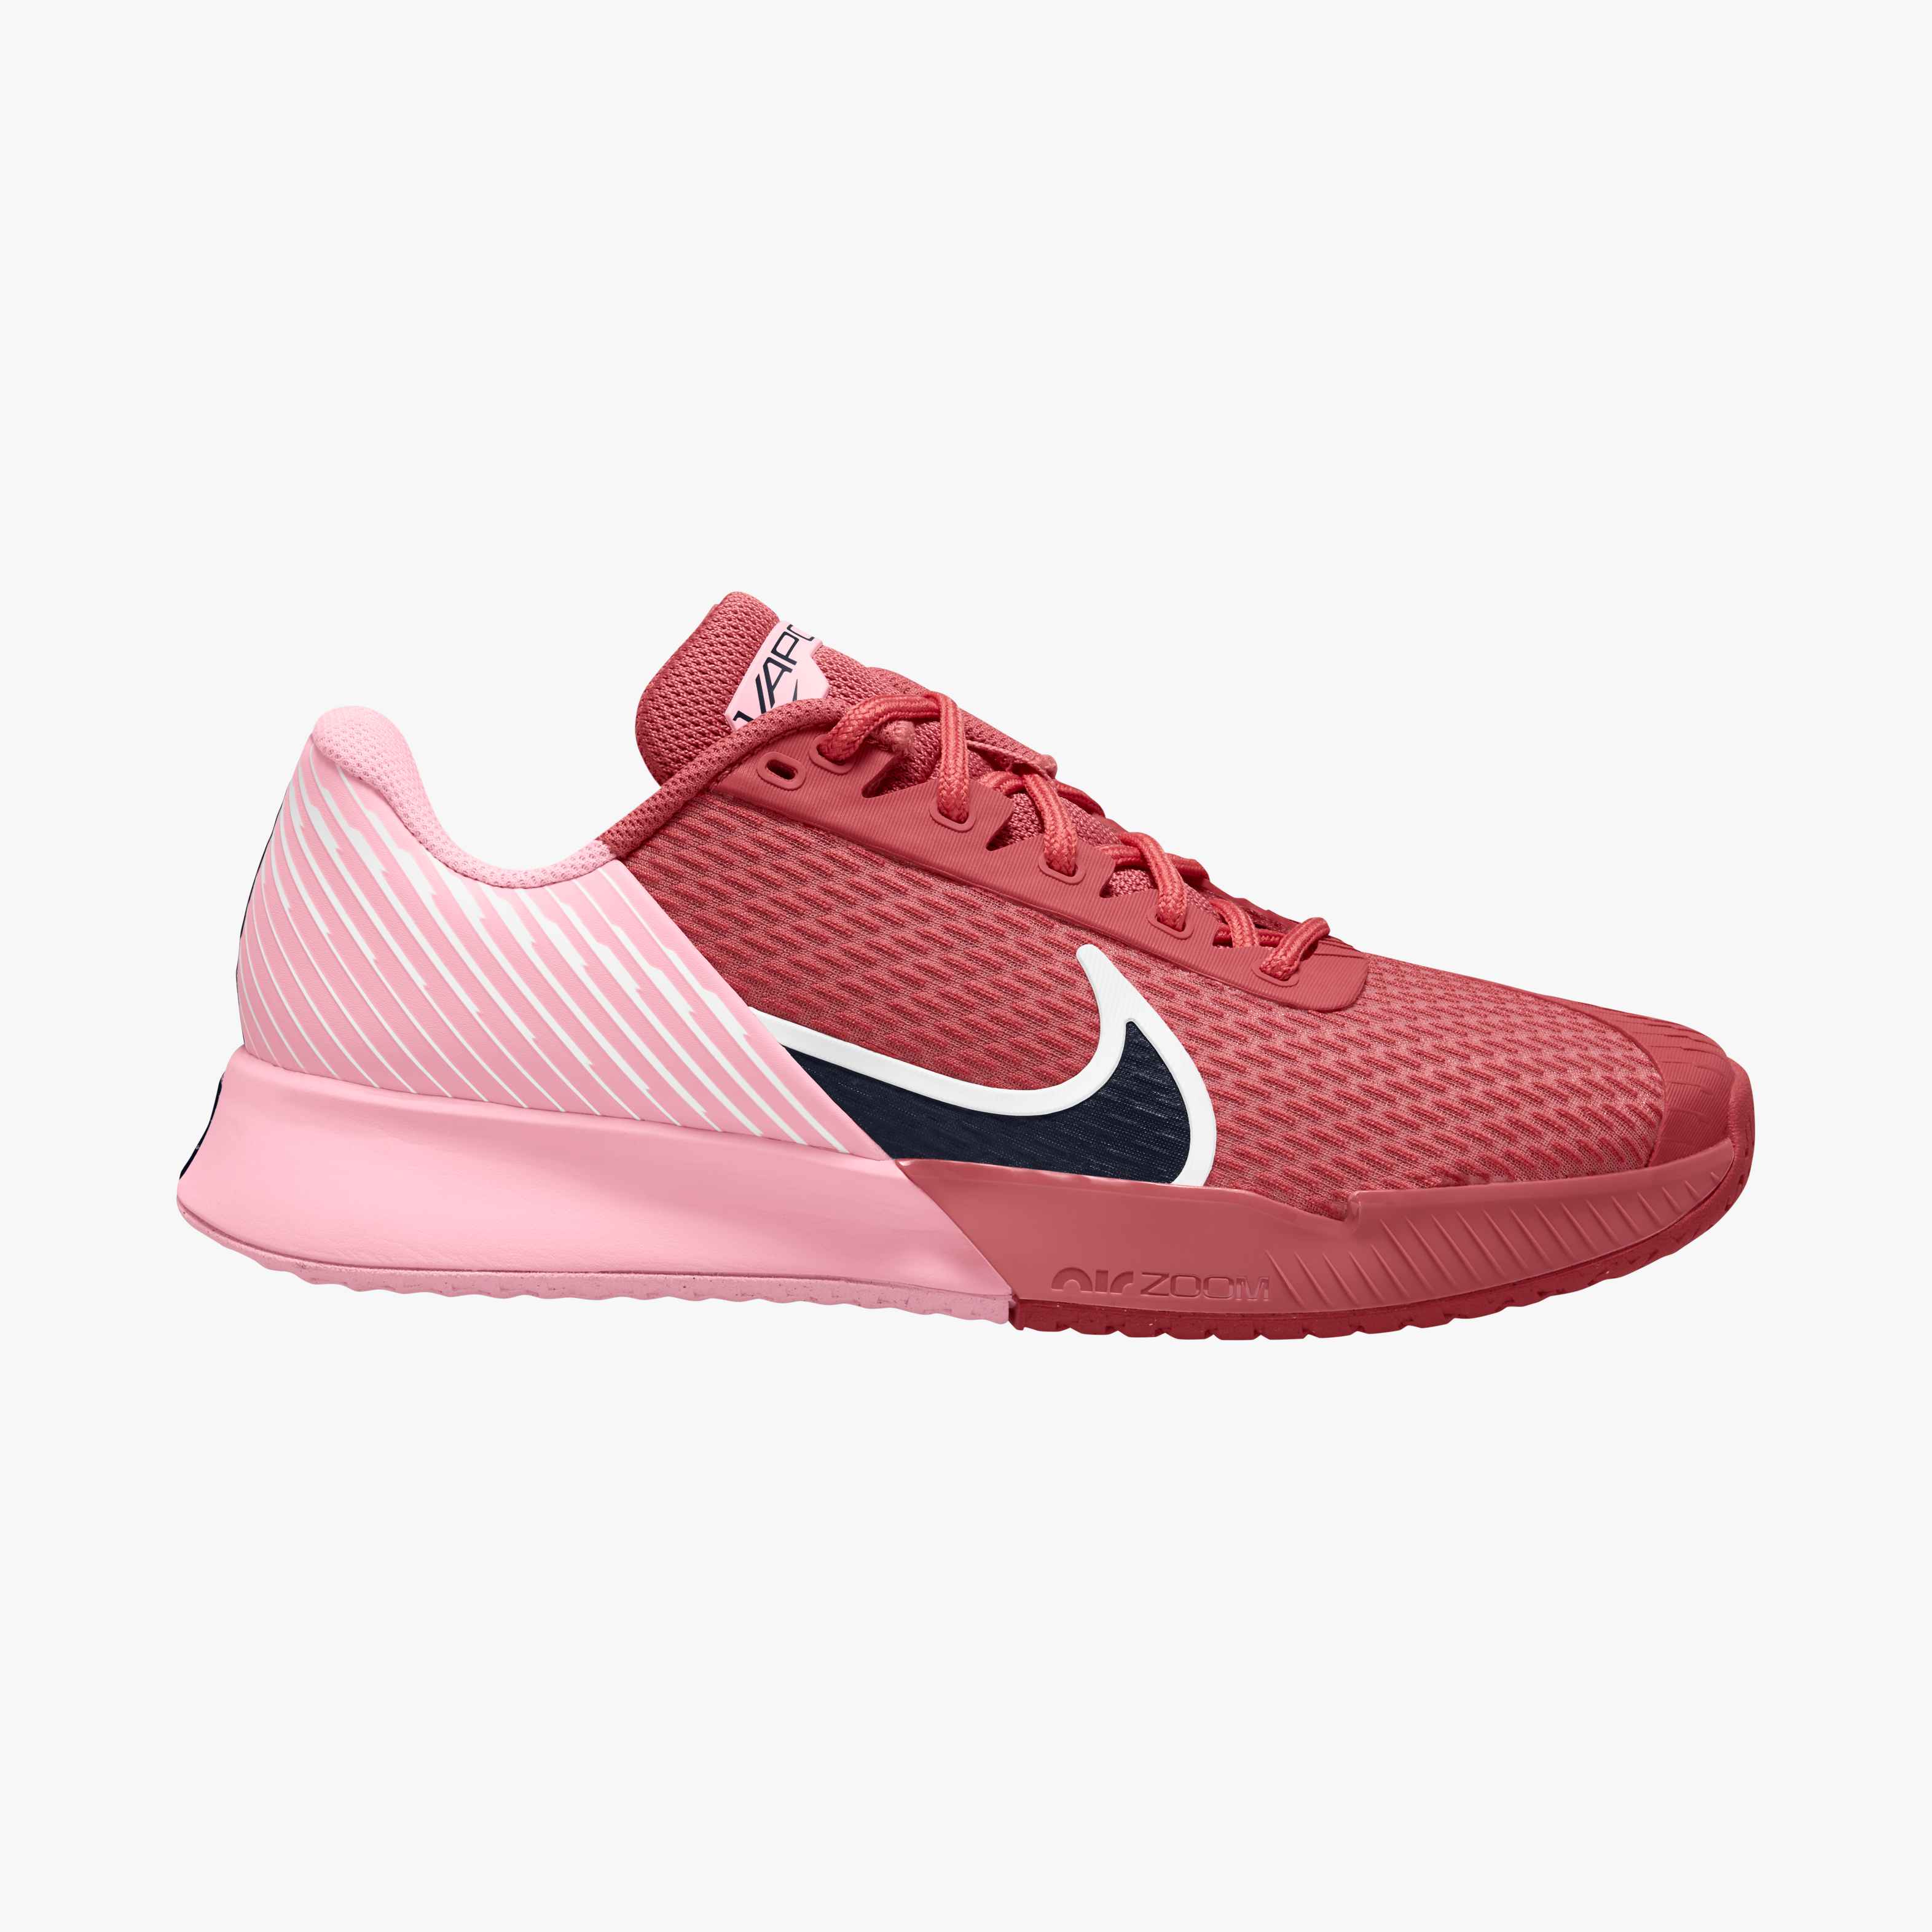 Nike Women's Air Zoom Vapor Pro 2 in Adobe/Obsidian-Med Soft Pink-White